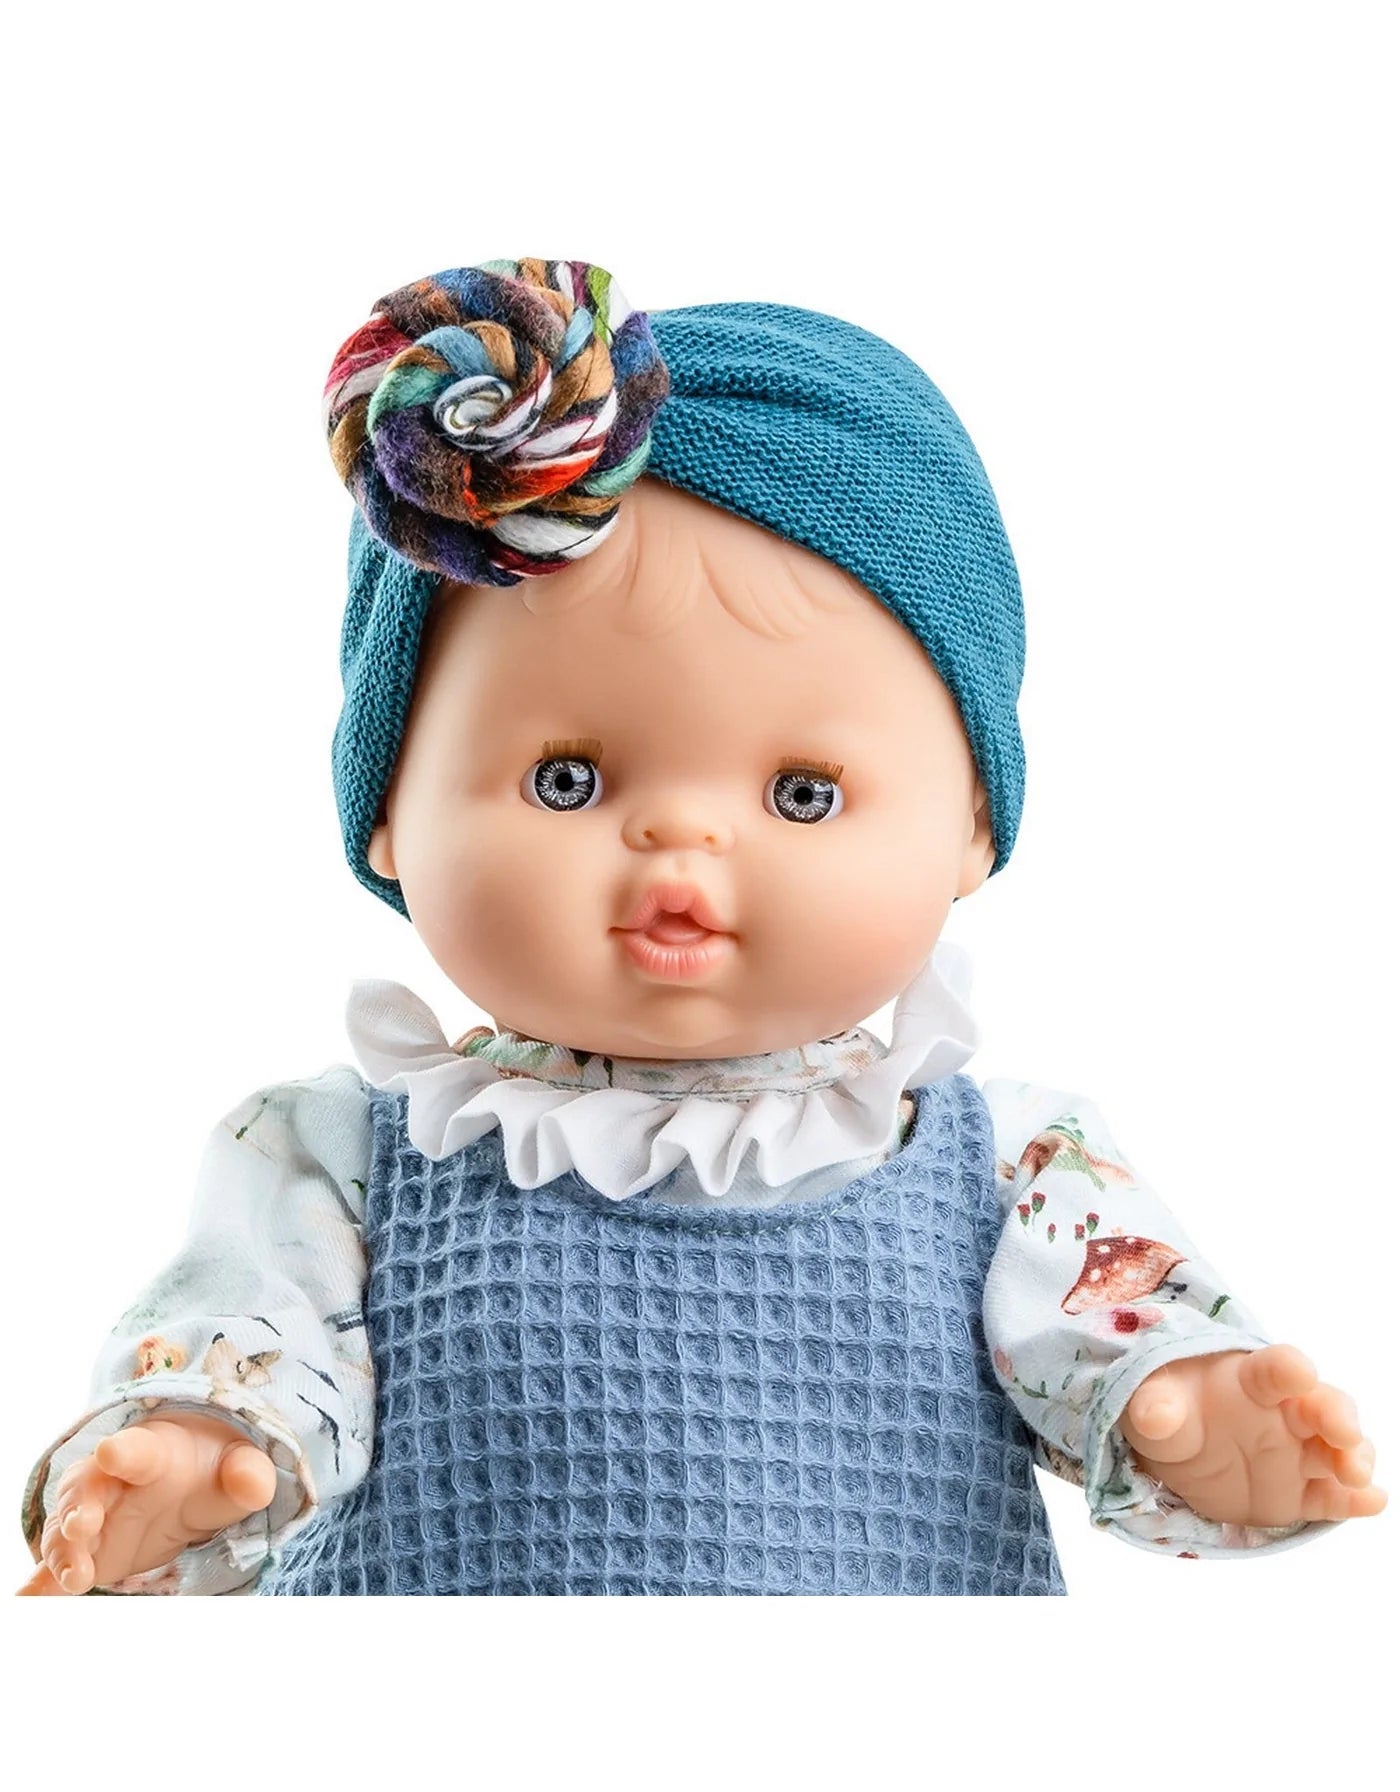 Romper bleu et bonnet turban pour poupée Gordis Paola Reina